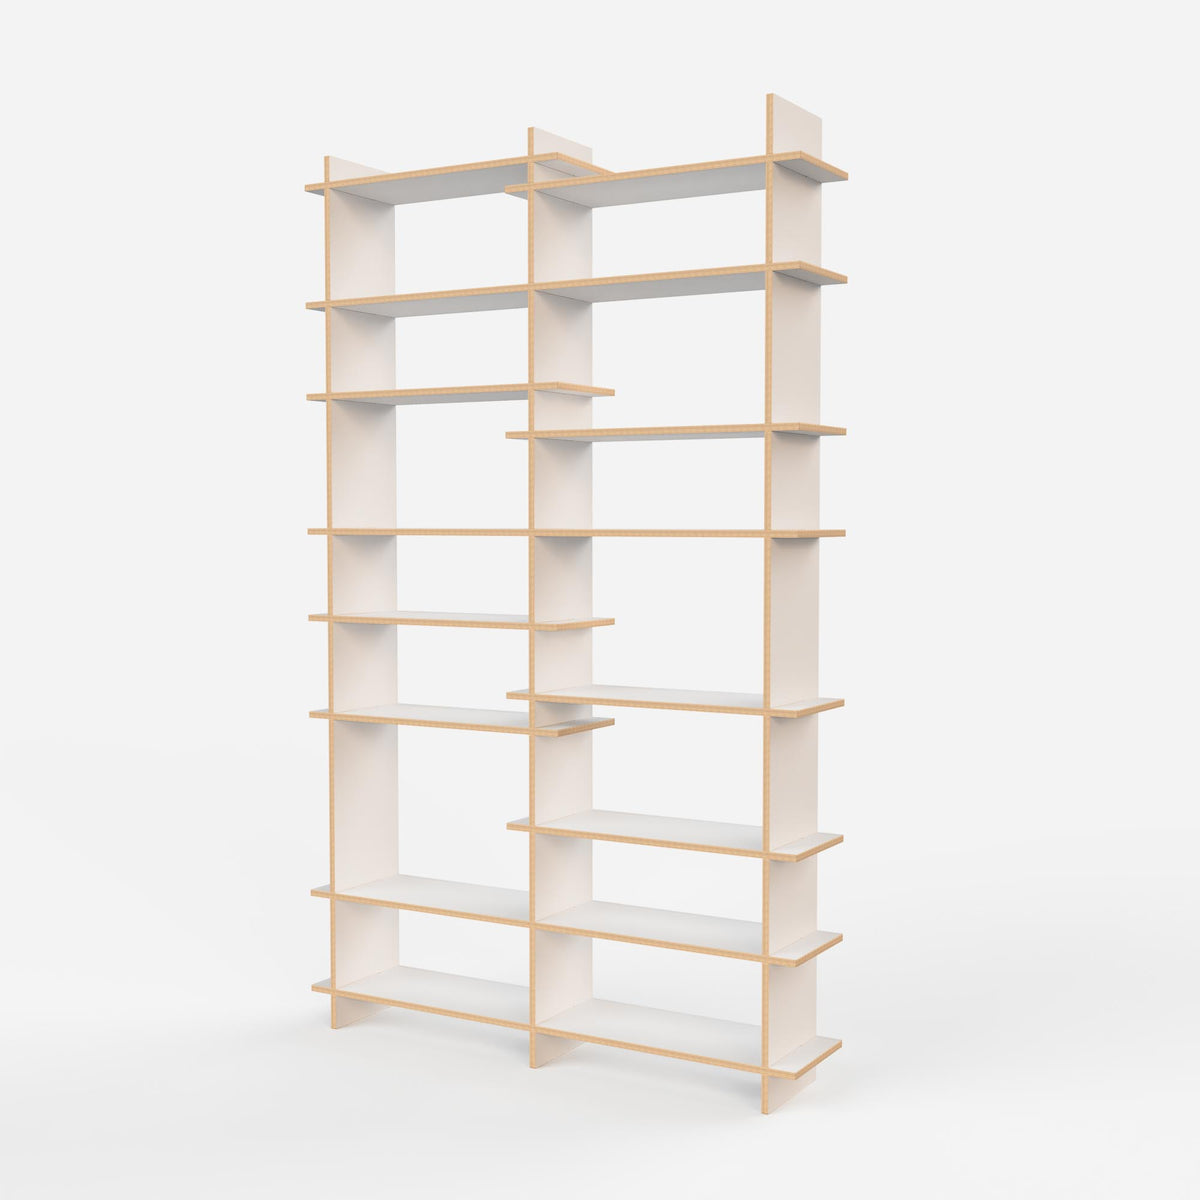 The Shelves 3UR